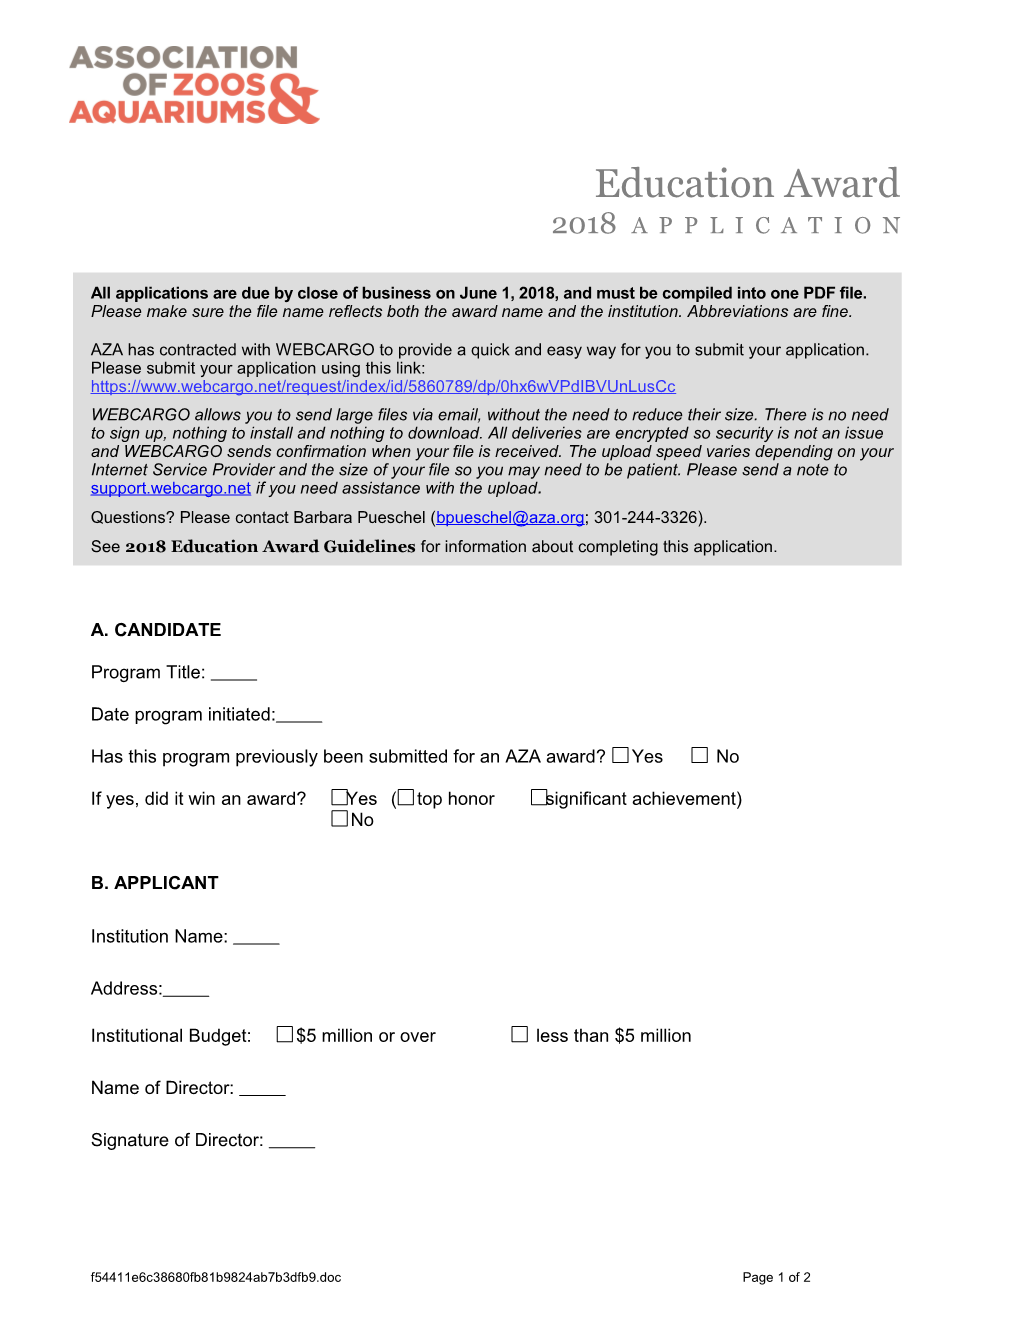 AZA 2010 Education Award Application